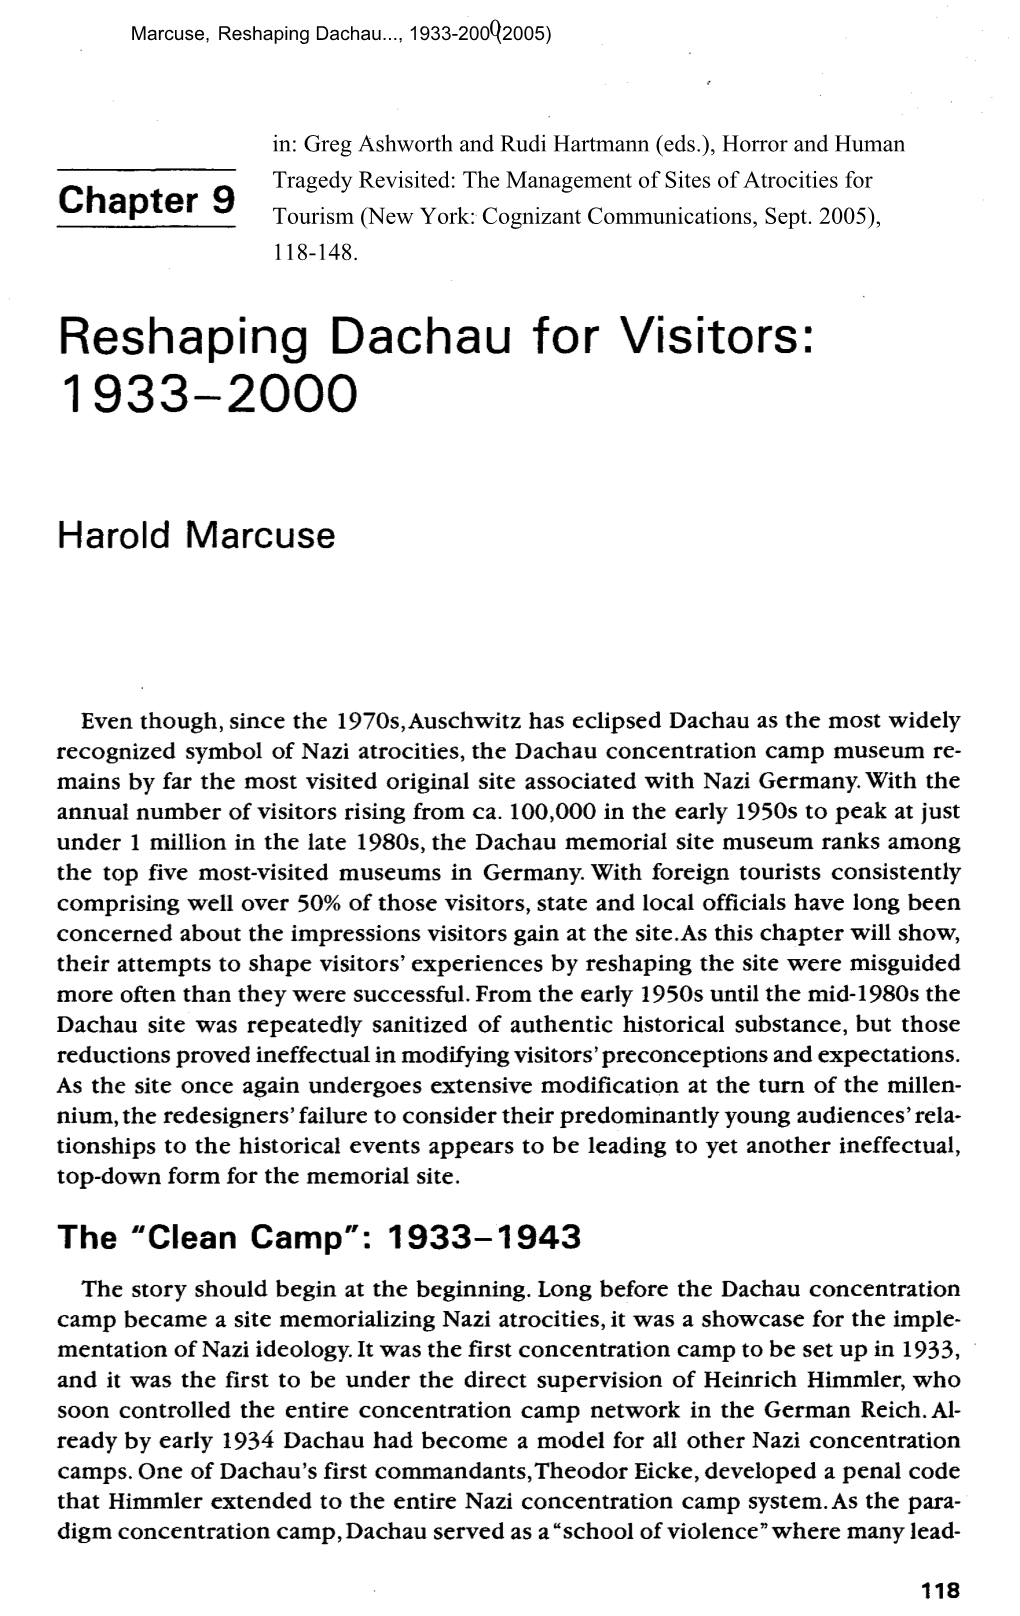 Reshaping Dachau for Visitors, 1933-2000